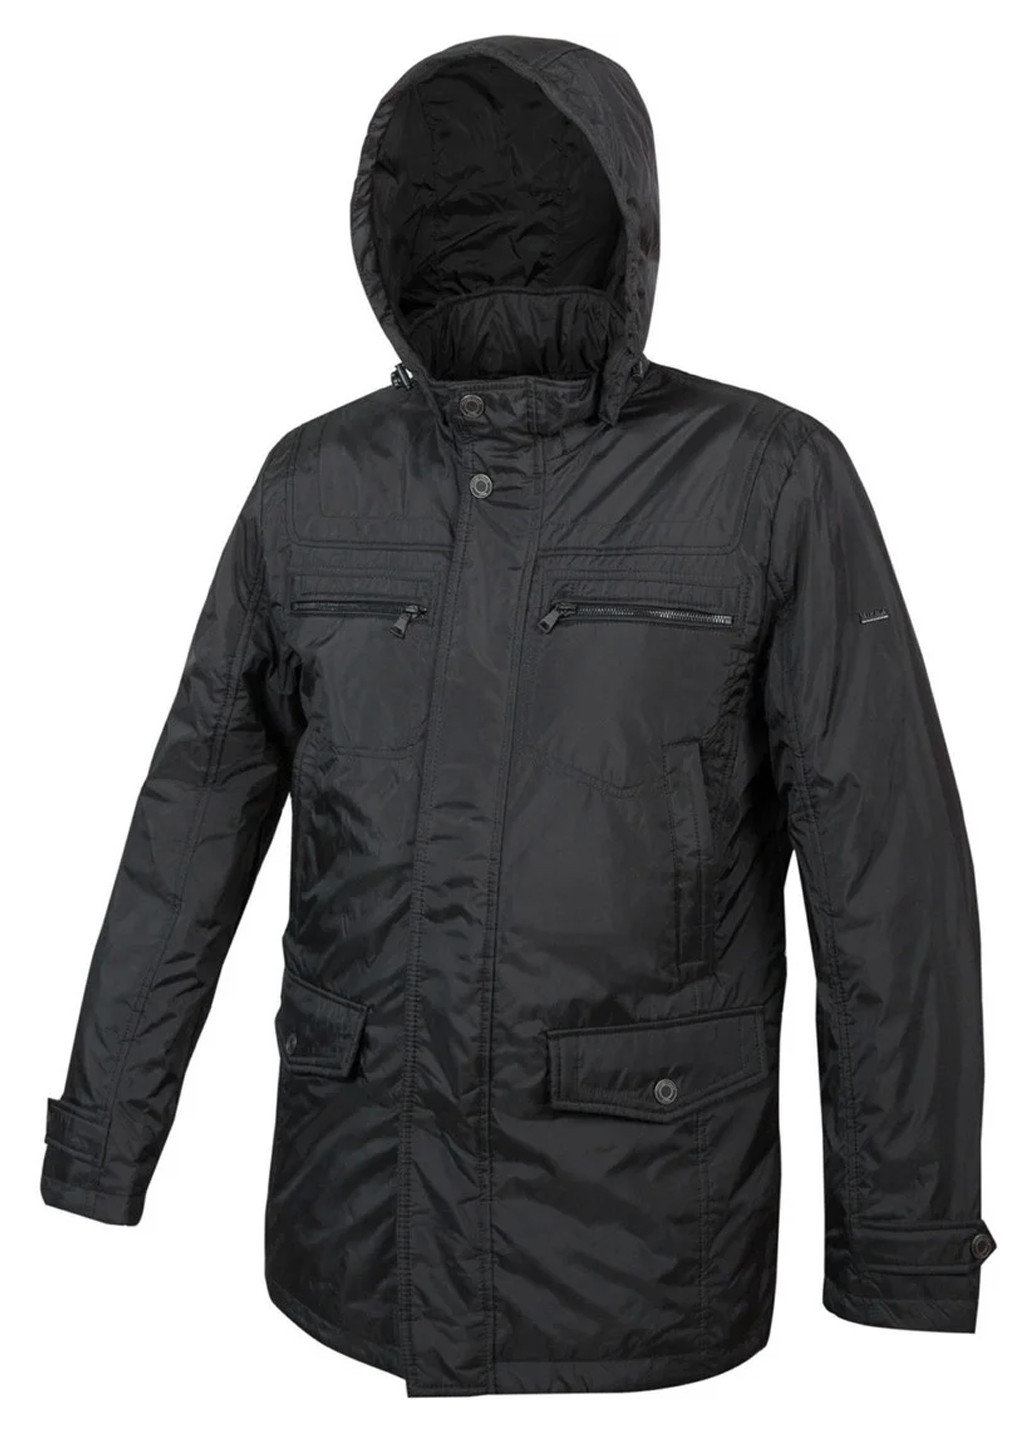 Черная демисезонная куртка демисезонная мужска длинная с капюшоном Mirage